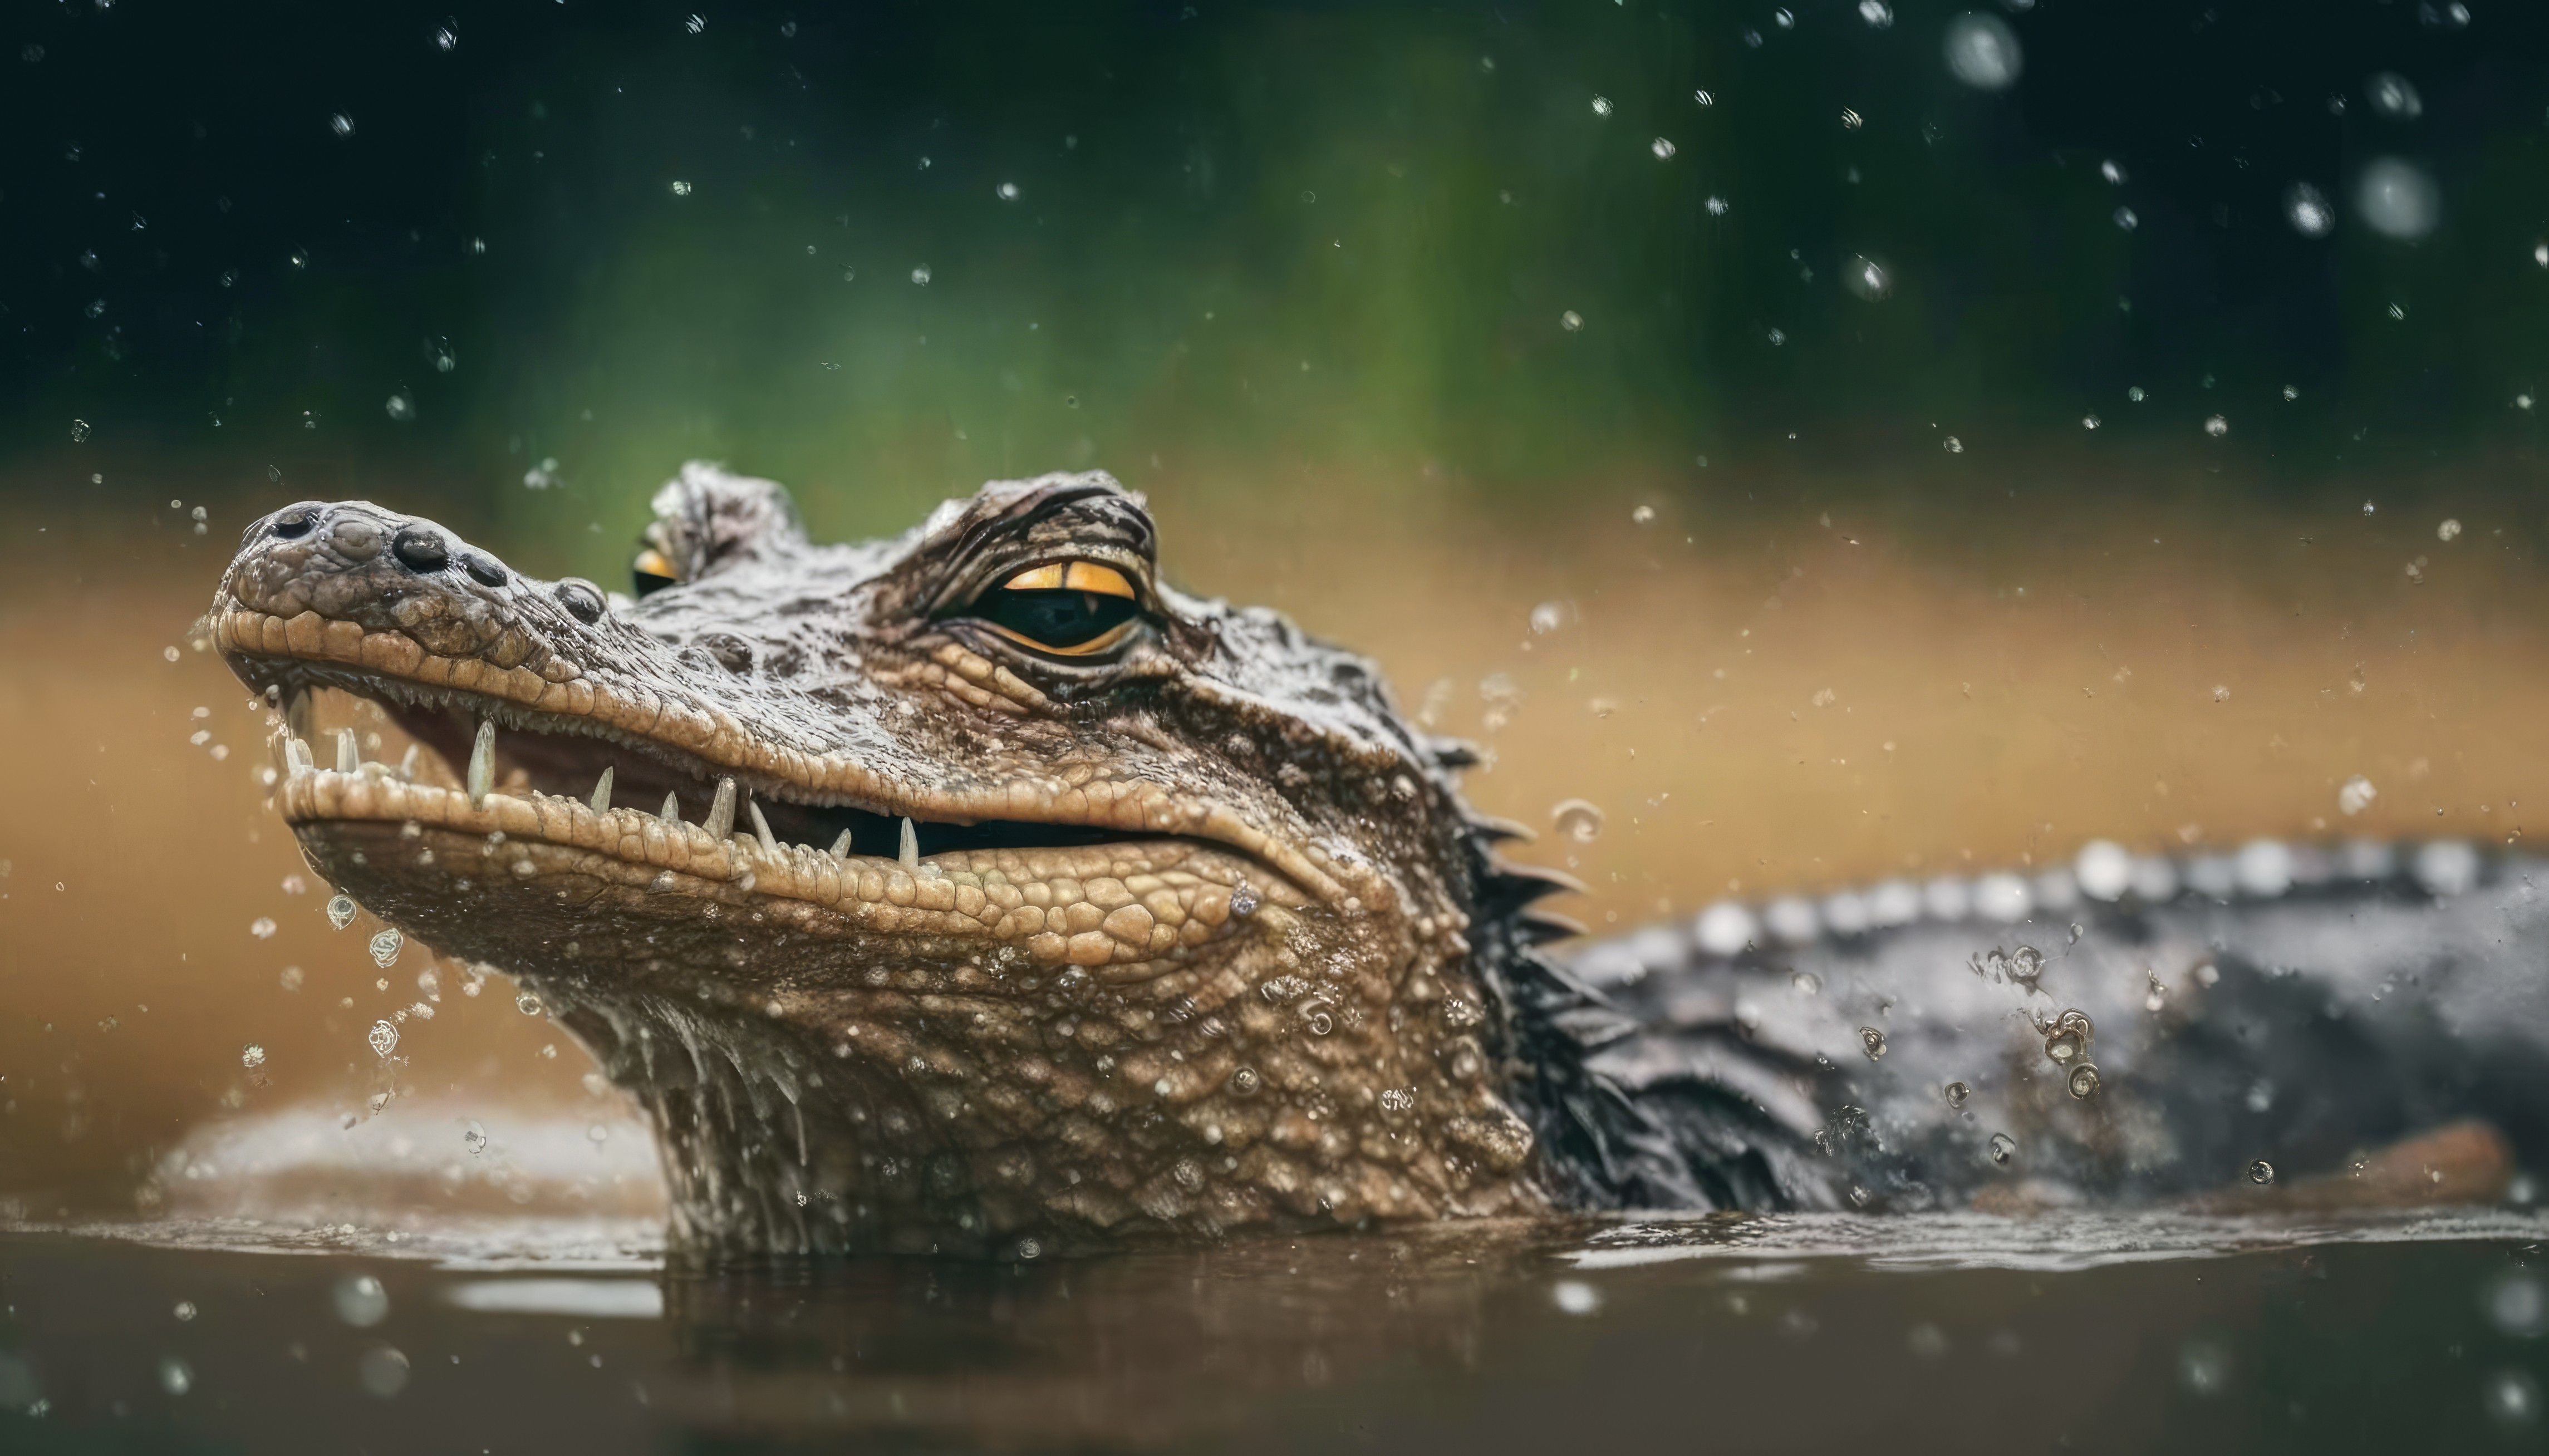 Крокодил не большого размера вынырнул из воды